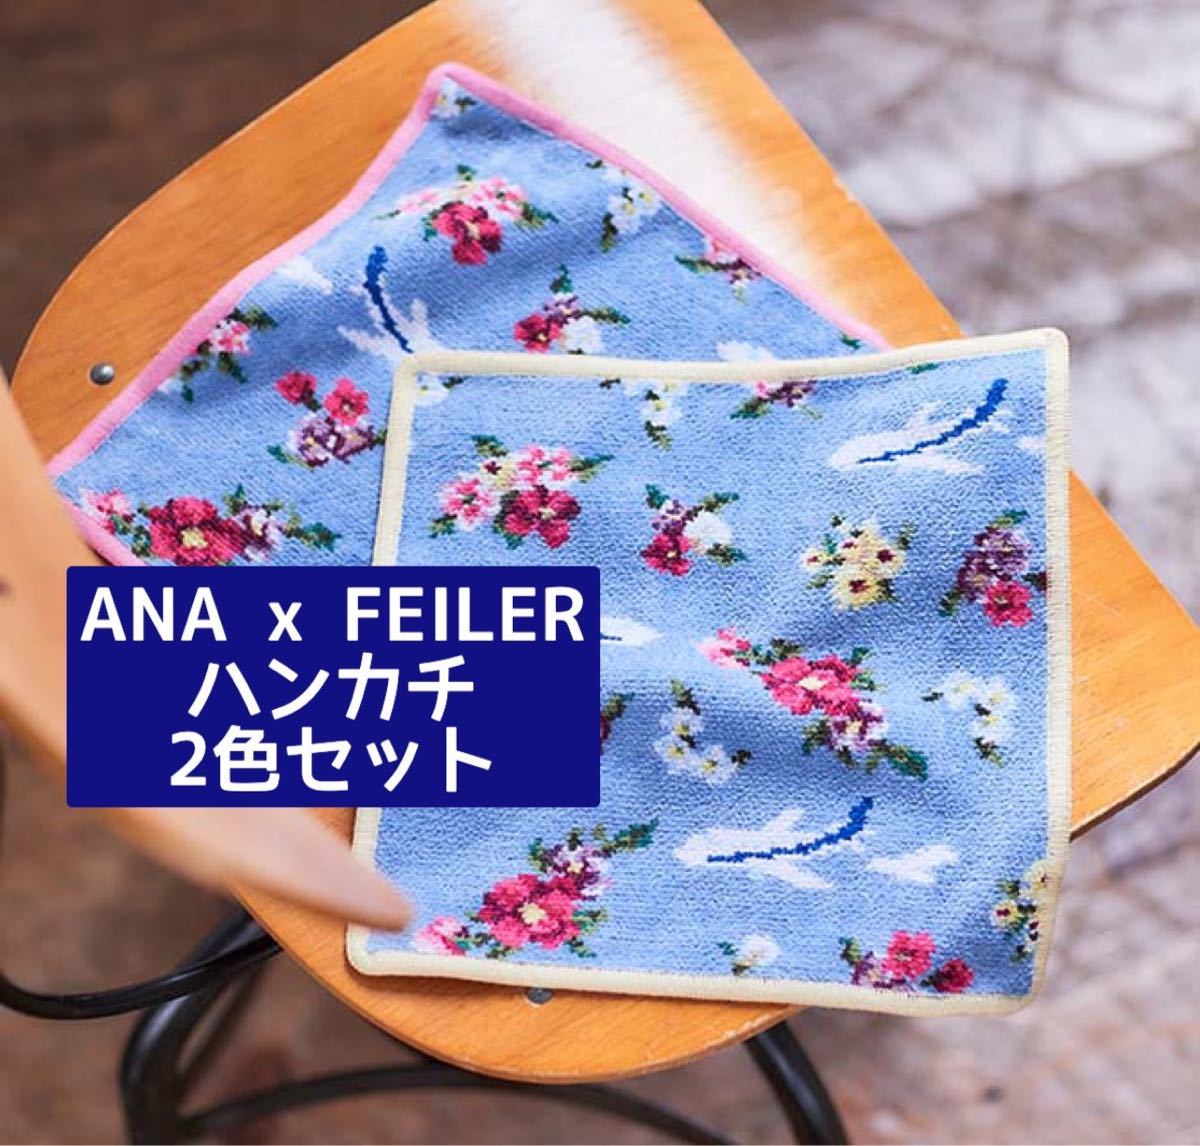 ANA オリジナル FEILER for ANA 手つきポーチ - 生活雑貨